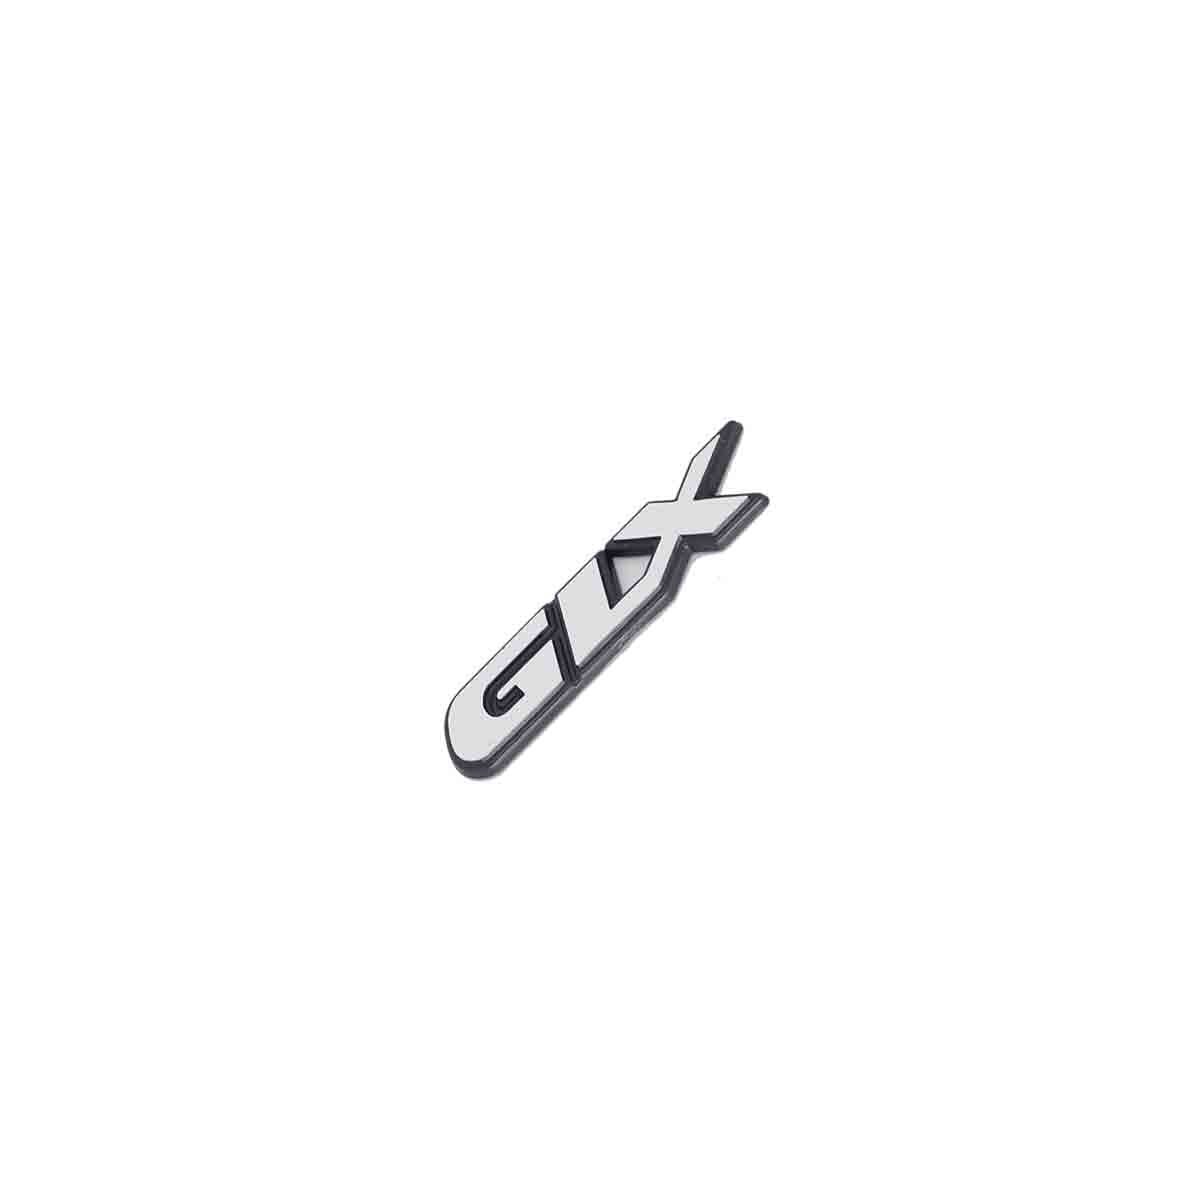 Emblema GLX Golf 97/99 Escovado